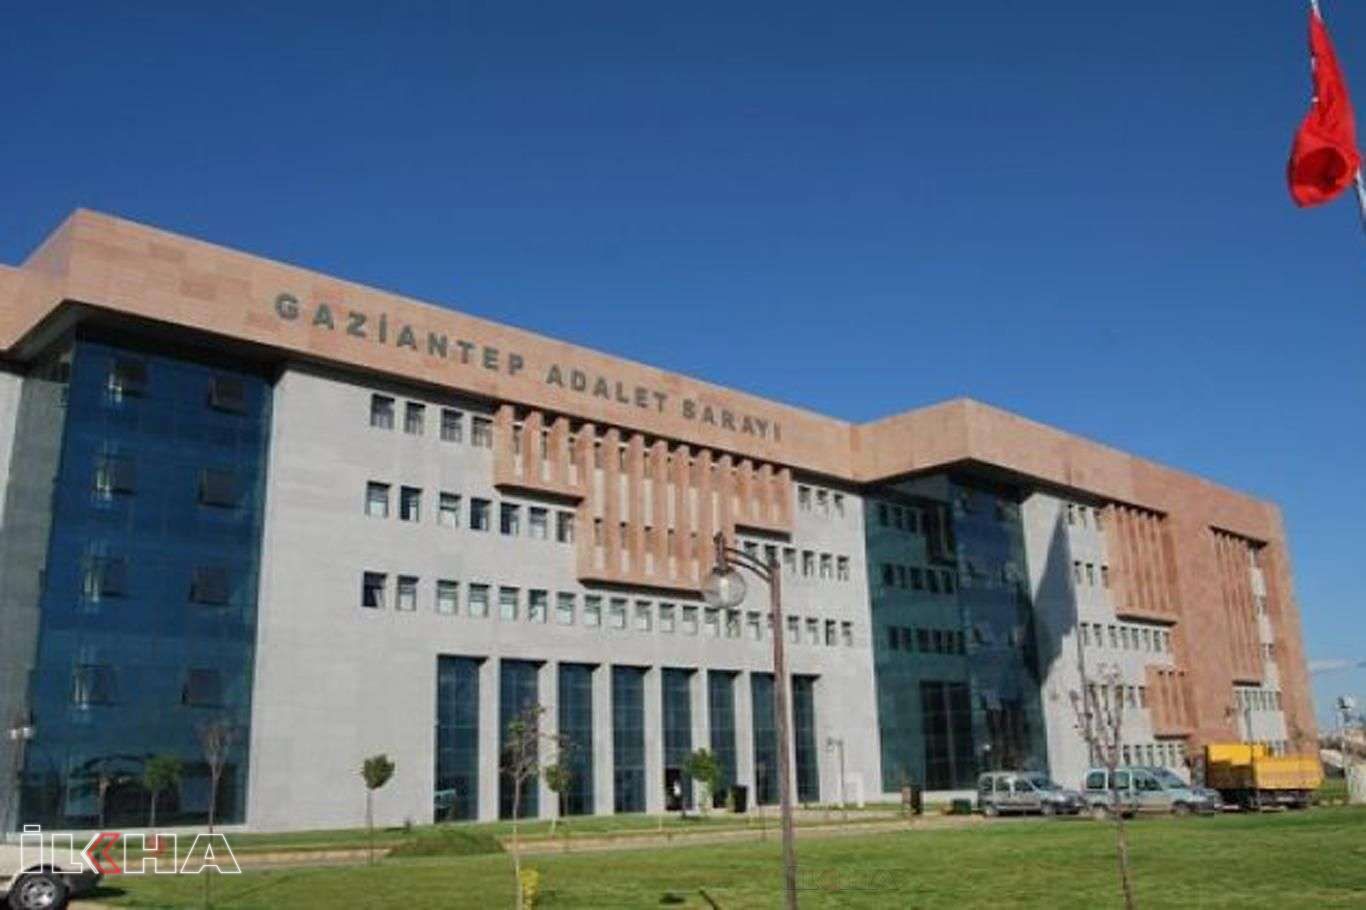 Gaziantep’te okuldan klima çalan 2 şüpheliden biri tutuklandı